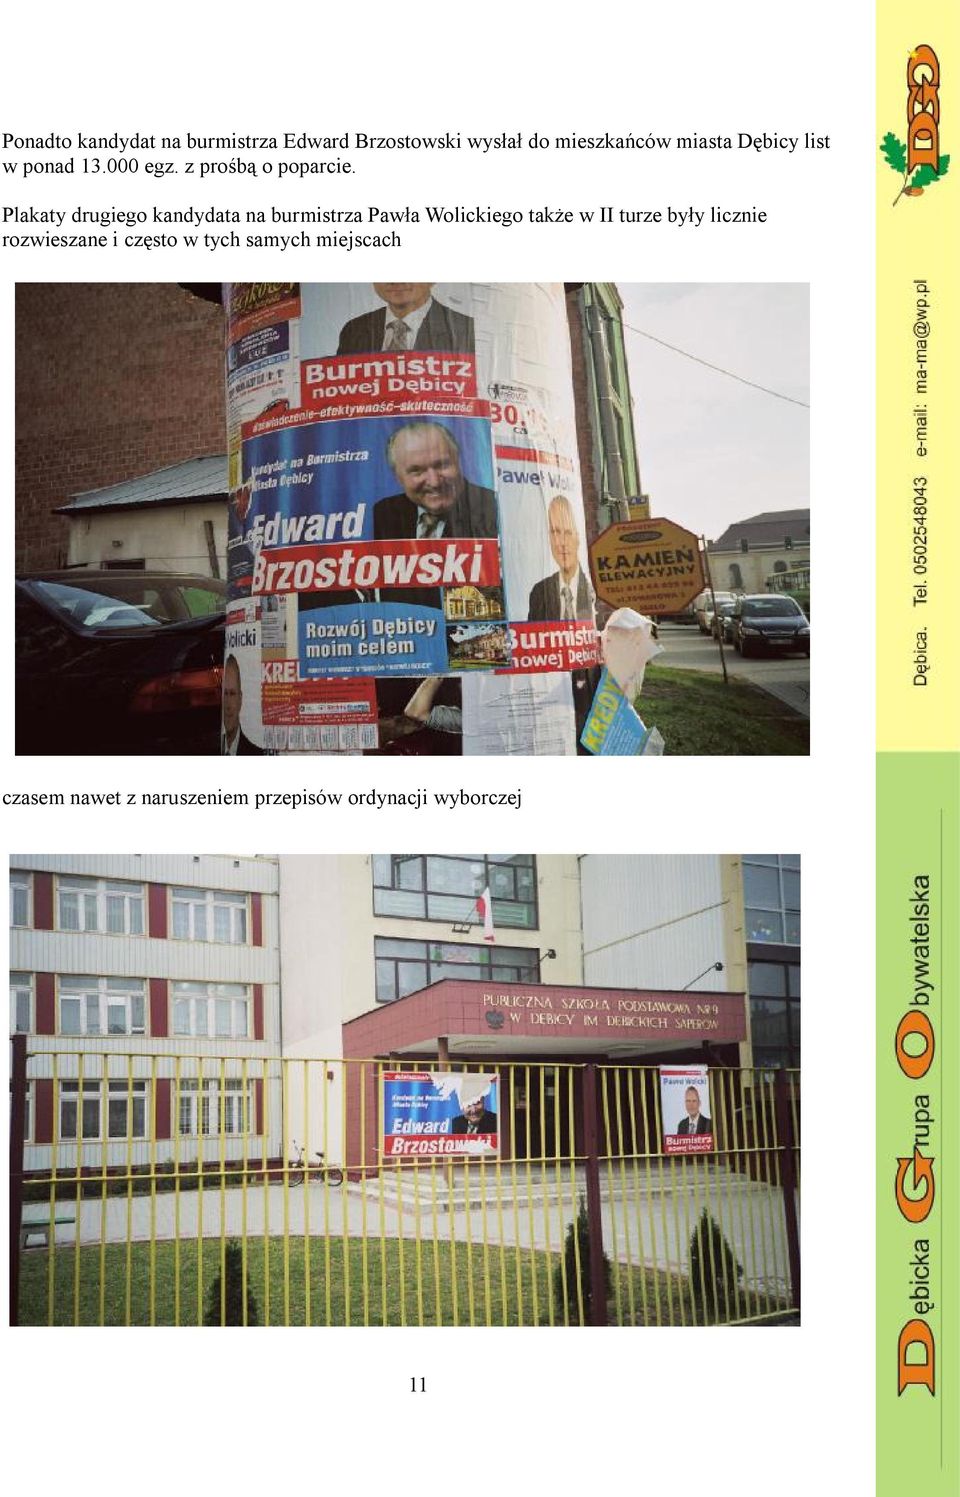 Plakaty drugiego kandydata na burmistrza Pawła Wolickiego także w II turze były